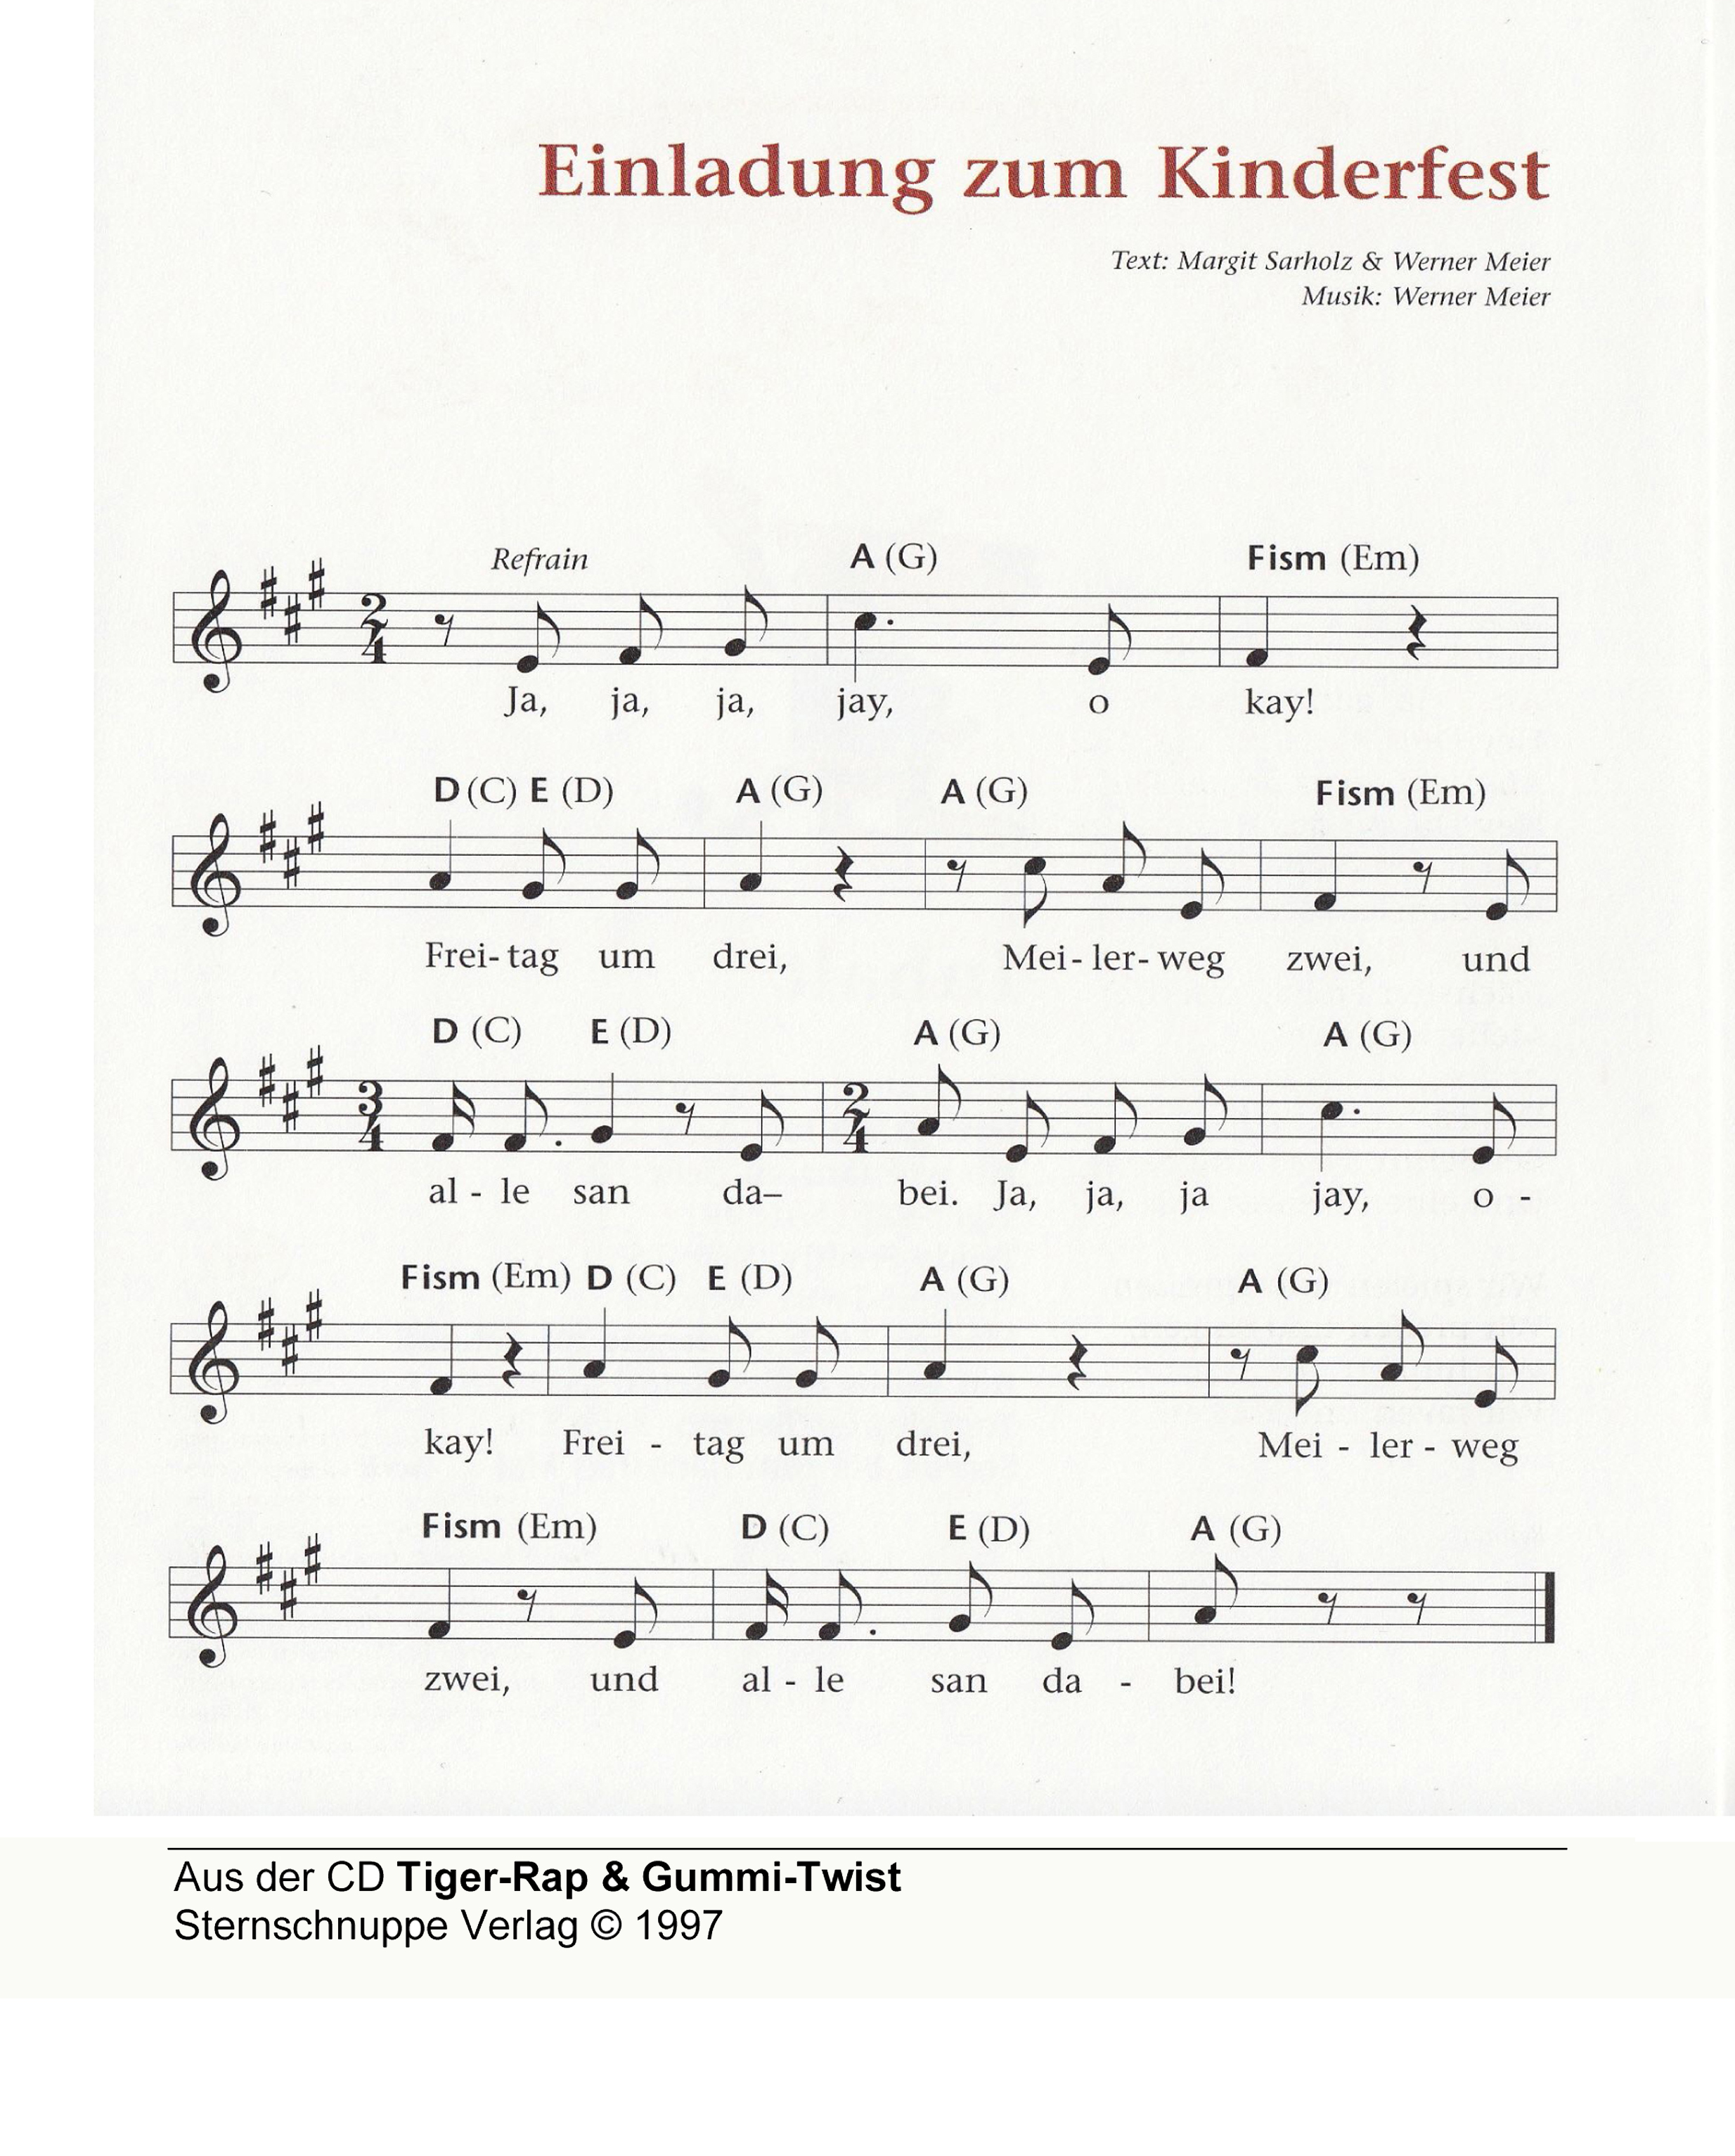 Liedtext, Akkorde und Noten vom Kinderlied Einladung zum Kinderfest